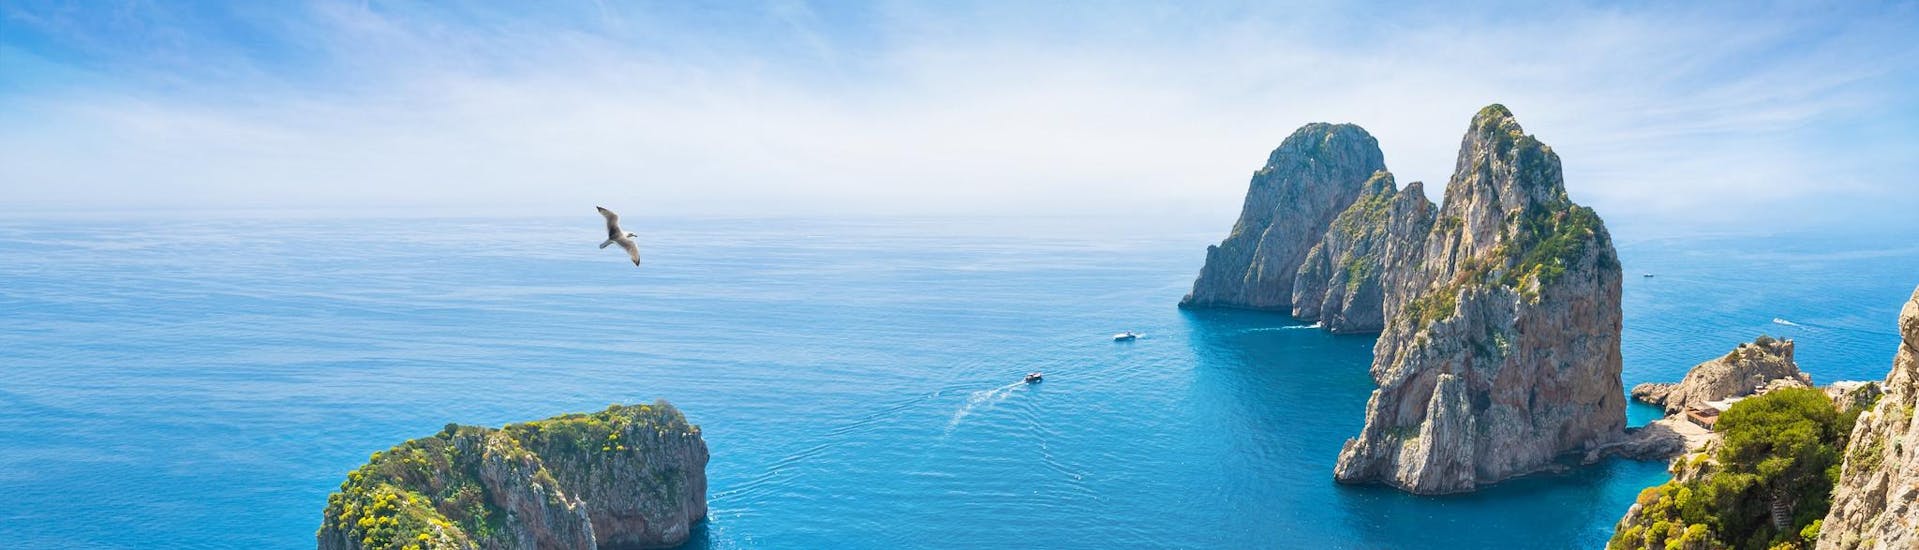 Luftaufnahme von Booten während einer Bootstour nach Capri.